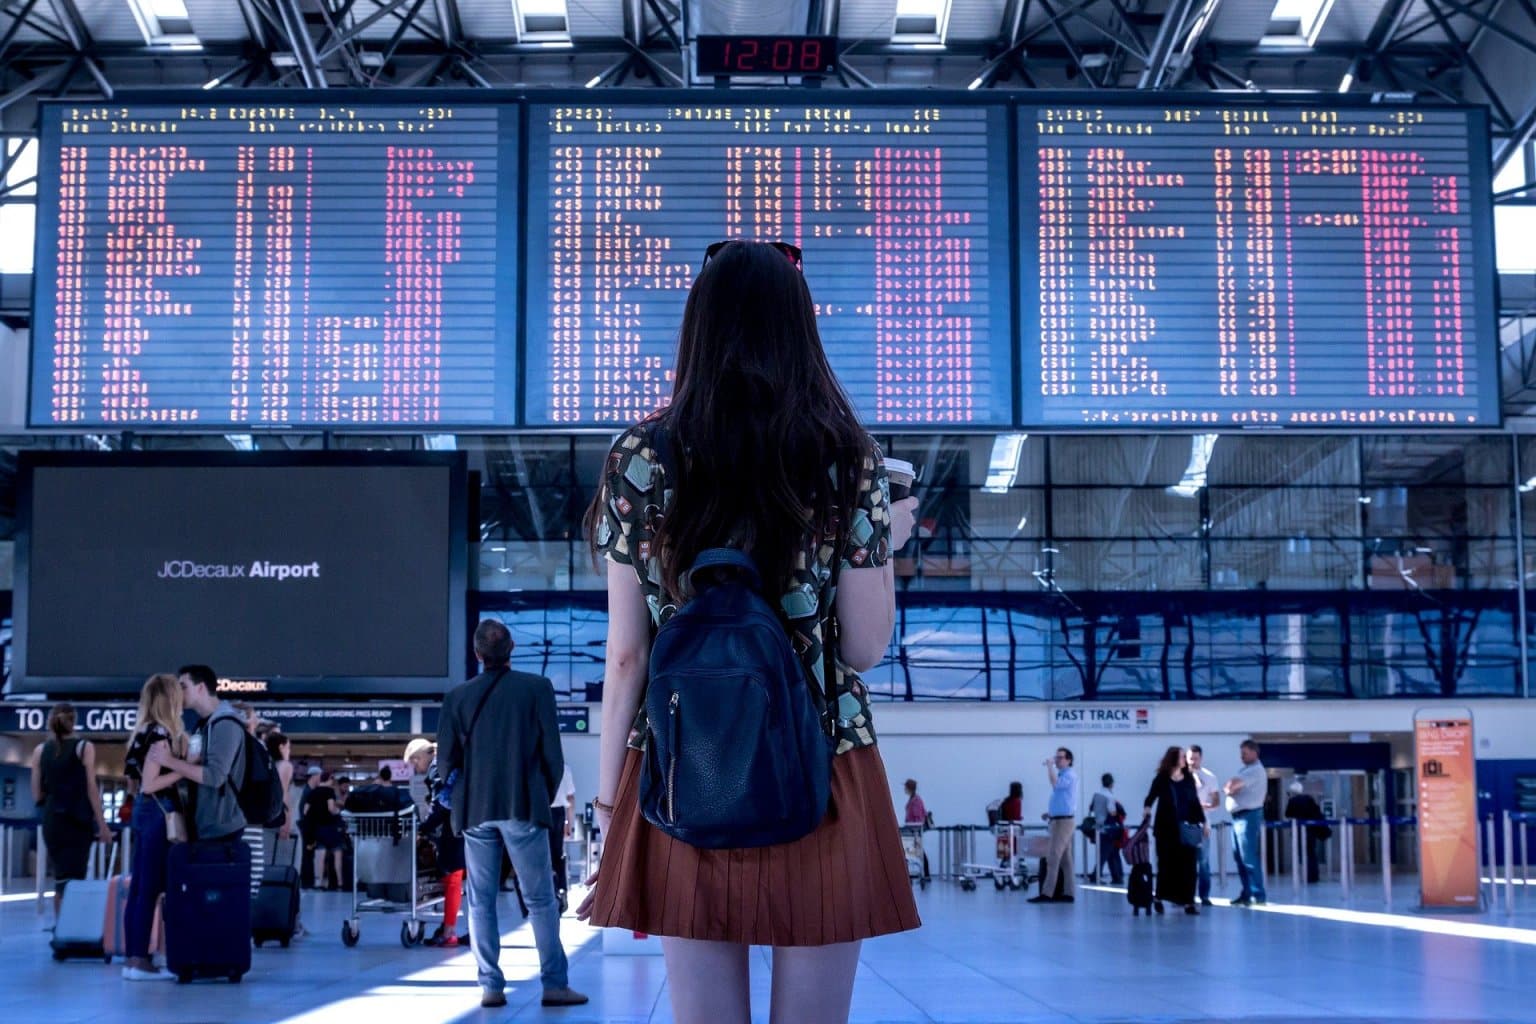 Junge Frau mit Rucksack im Flughafen vor einer Anzeigetafel - Flugreise